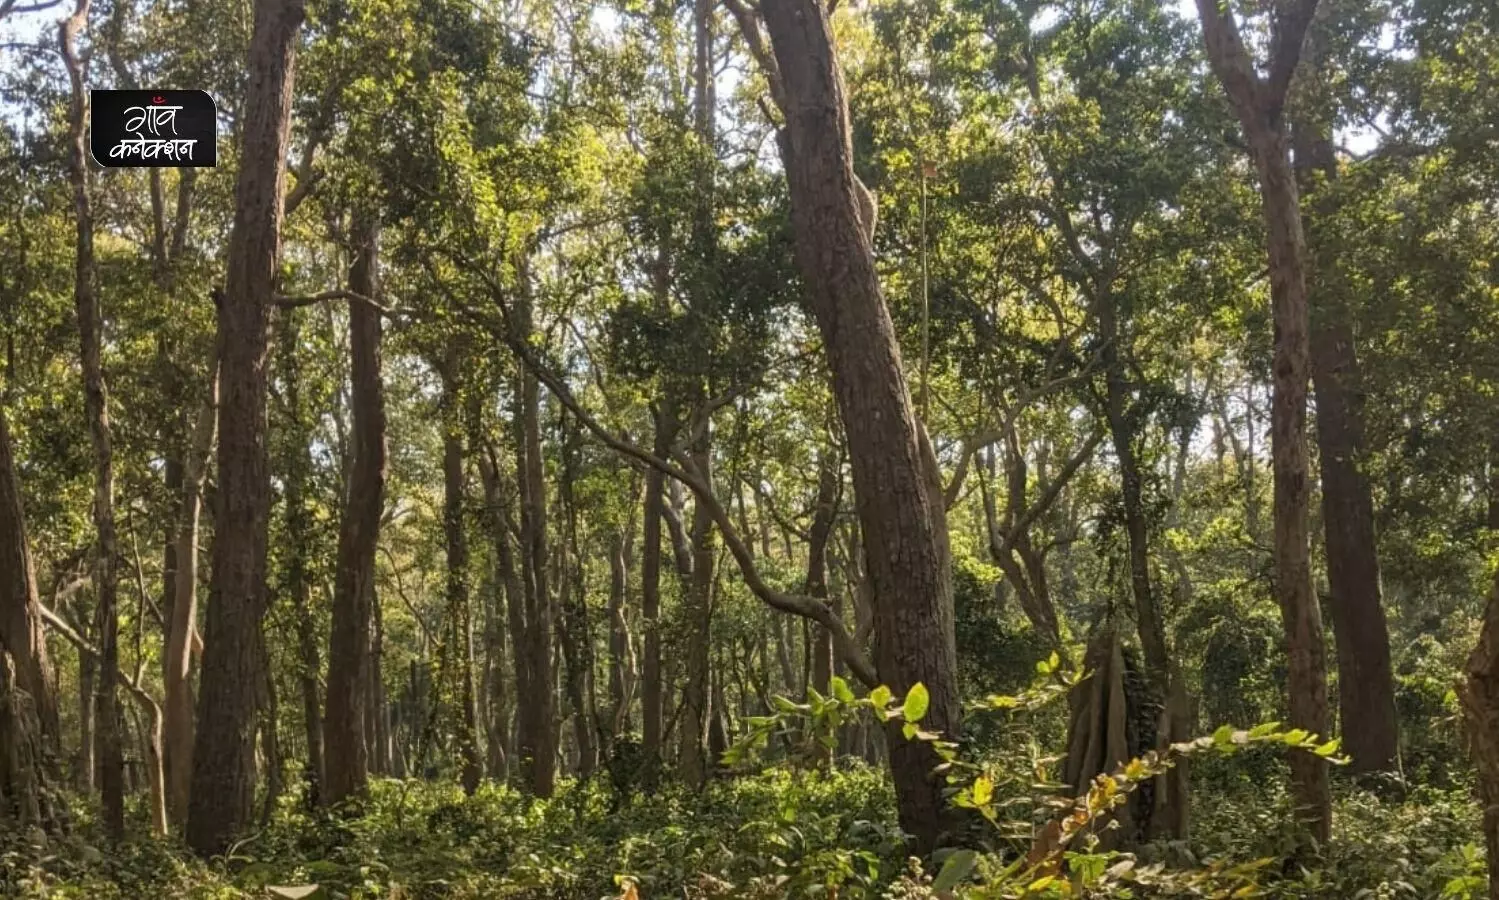 वन सर्वेक्षण रिपोर्ट 2021: देश में 2,261 वर्ग किमी बढ़ा वन क्षेत्र, आंध्र प्रदेश में हुई सबसे ज्यादा वृद्धि